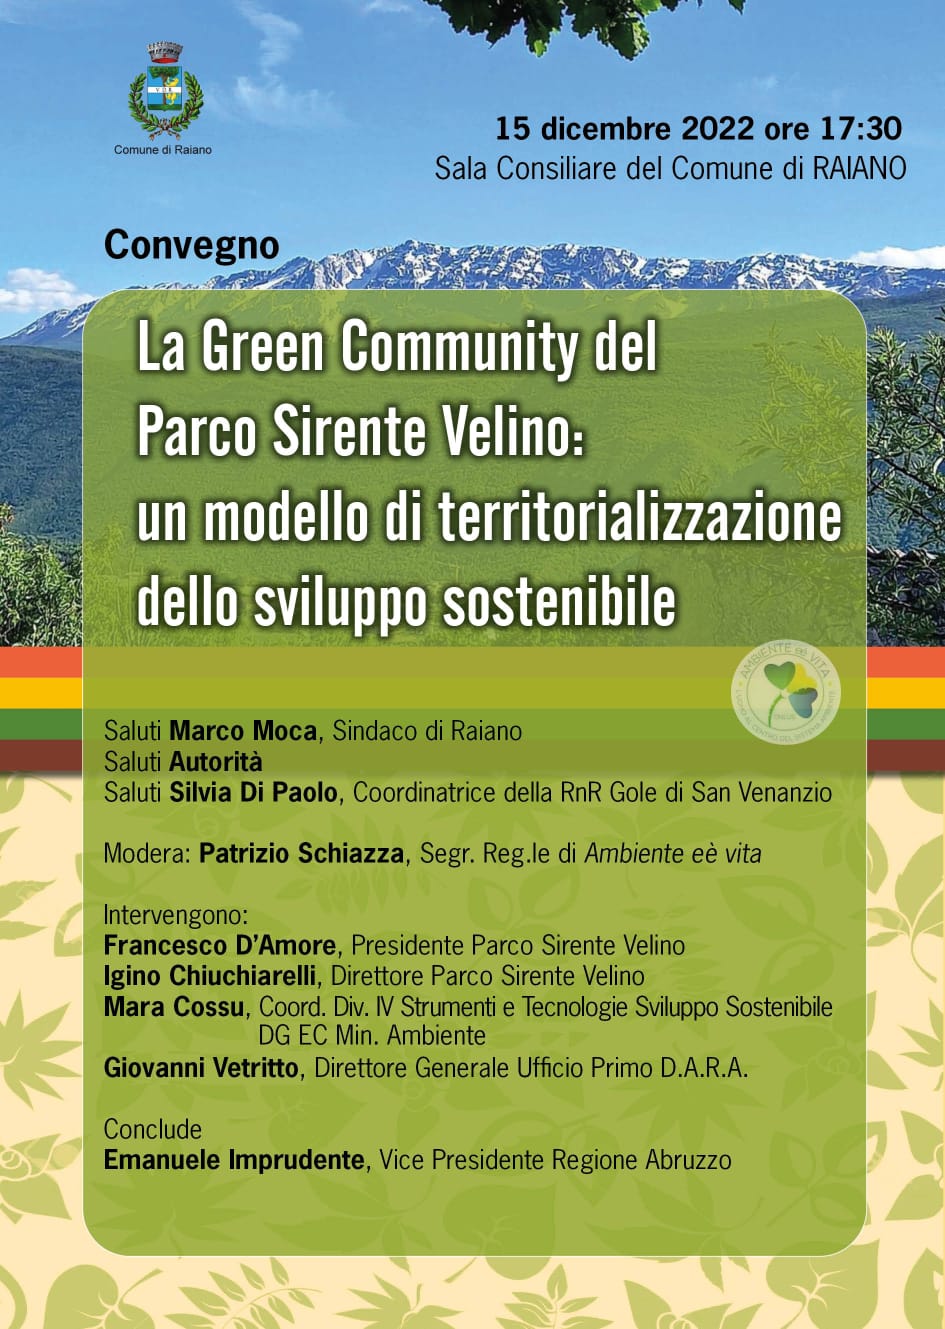 Convegno: La Green Community del Parco Sirente Velino: un modello di territorializzazione dello sviluppo sostenibile